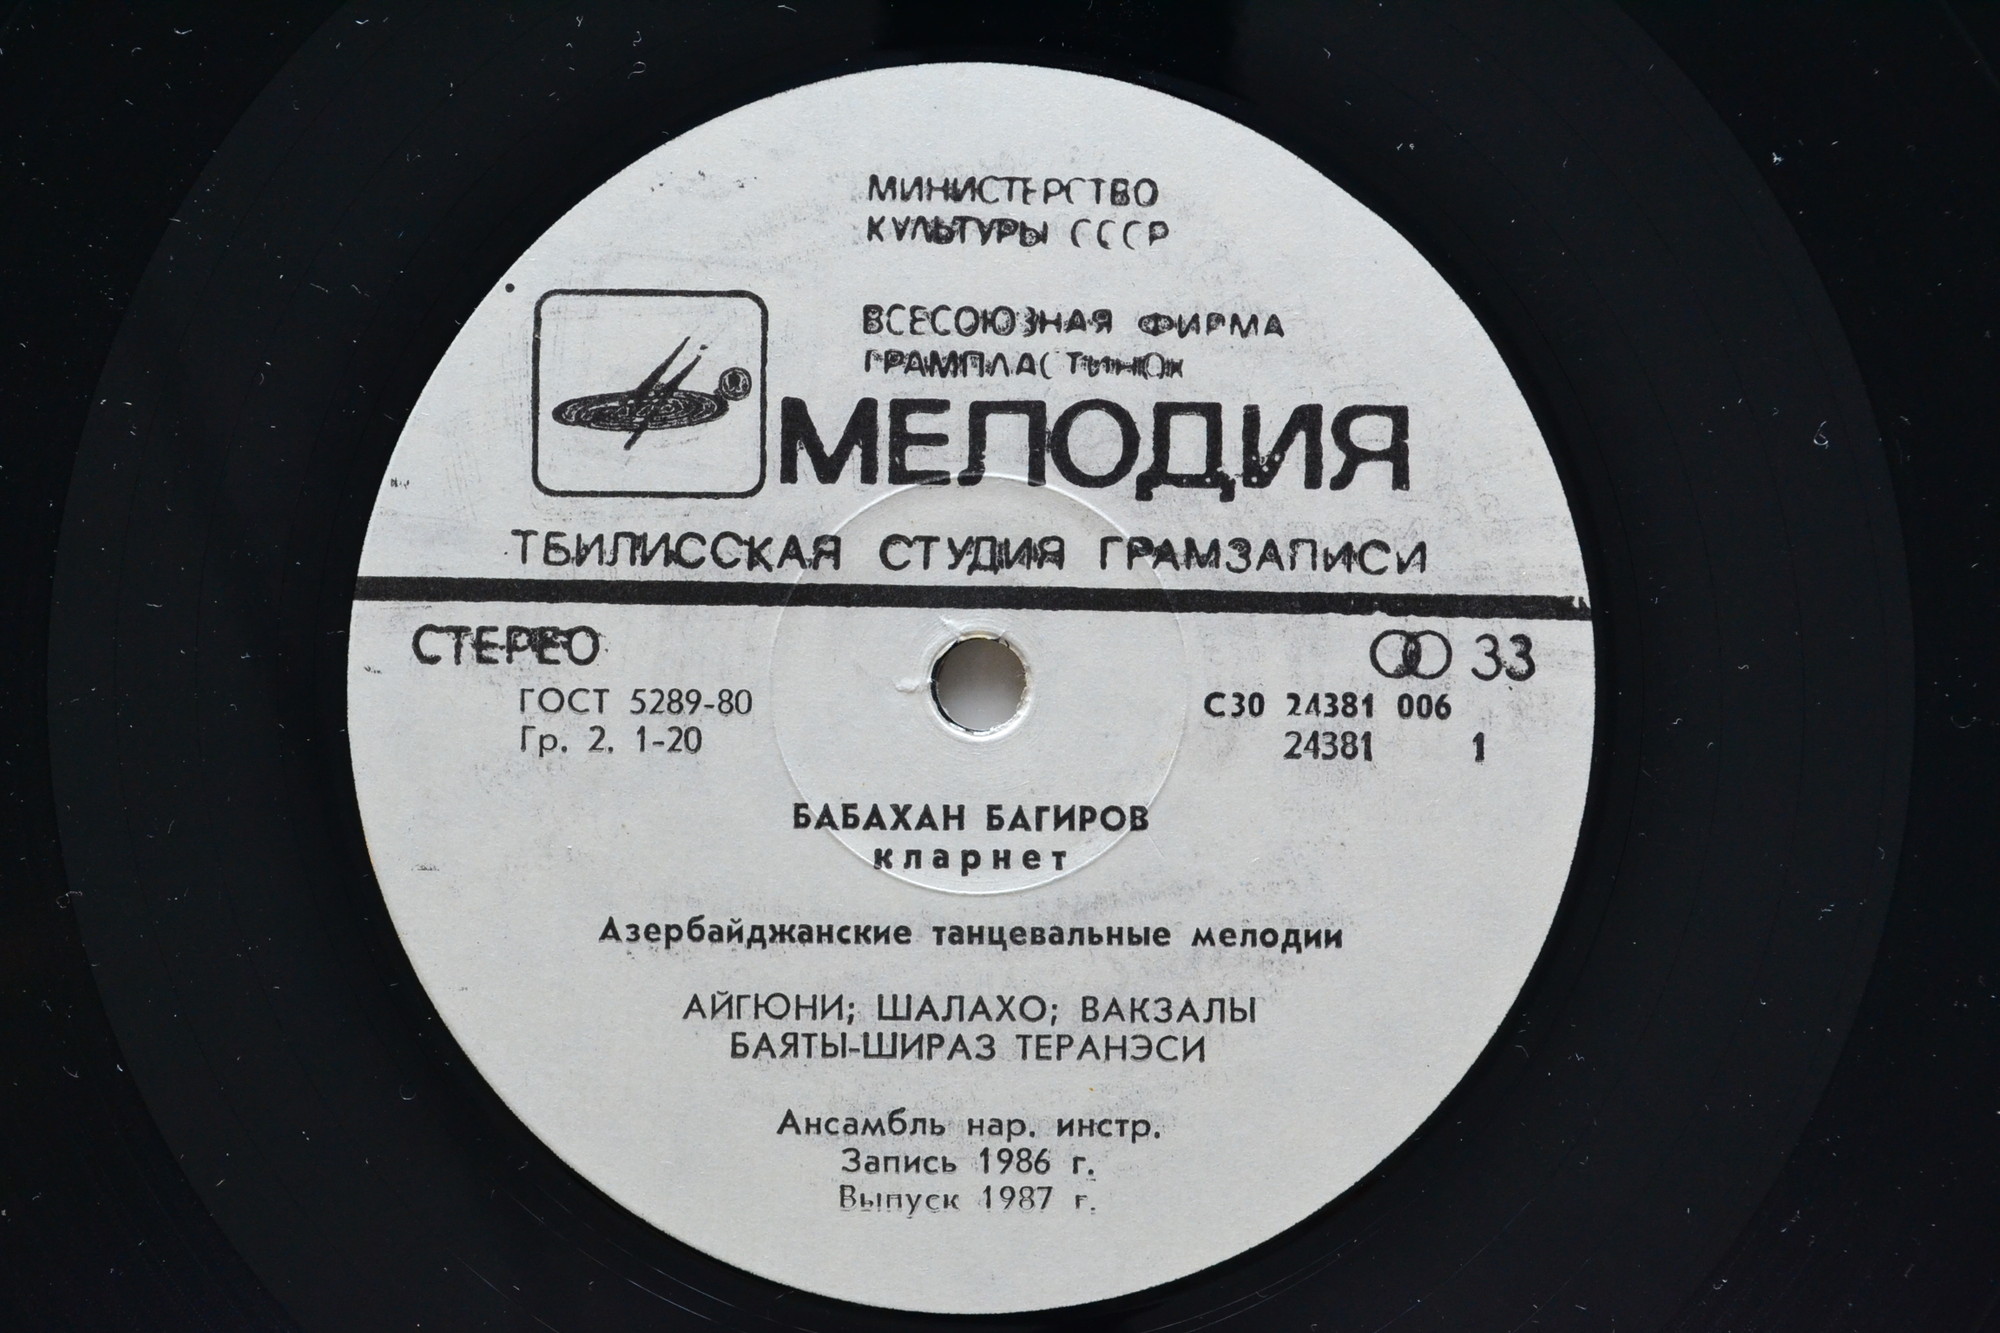 Бабахан БАГИРОВ (кларнет). Танцевальные мелодии